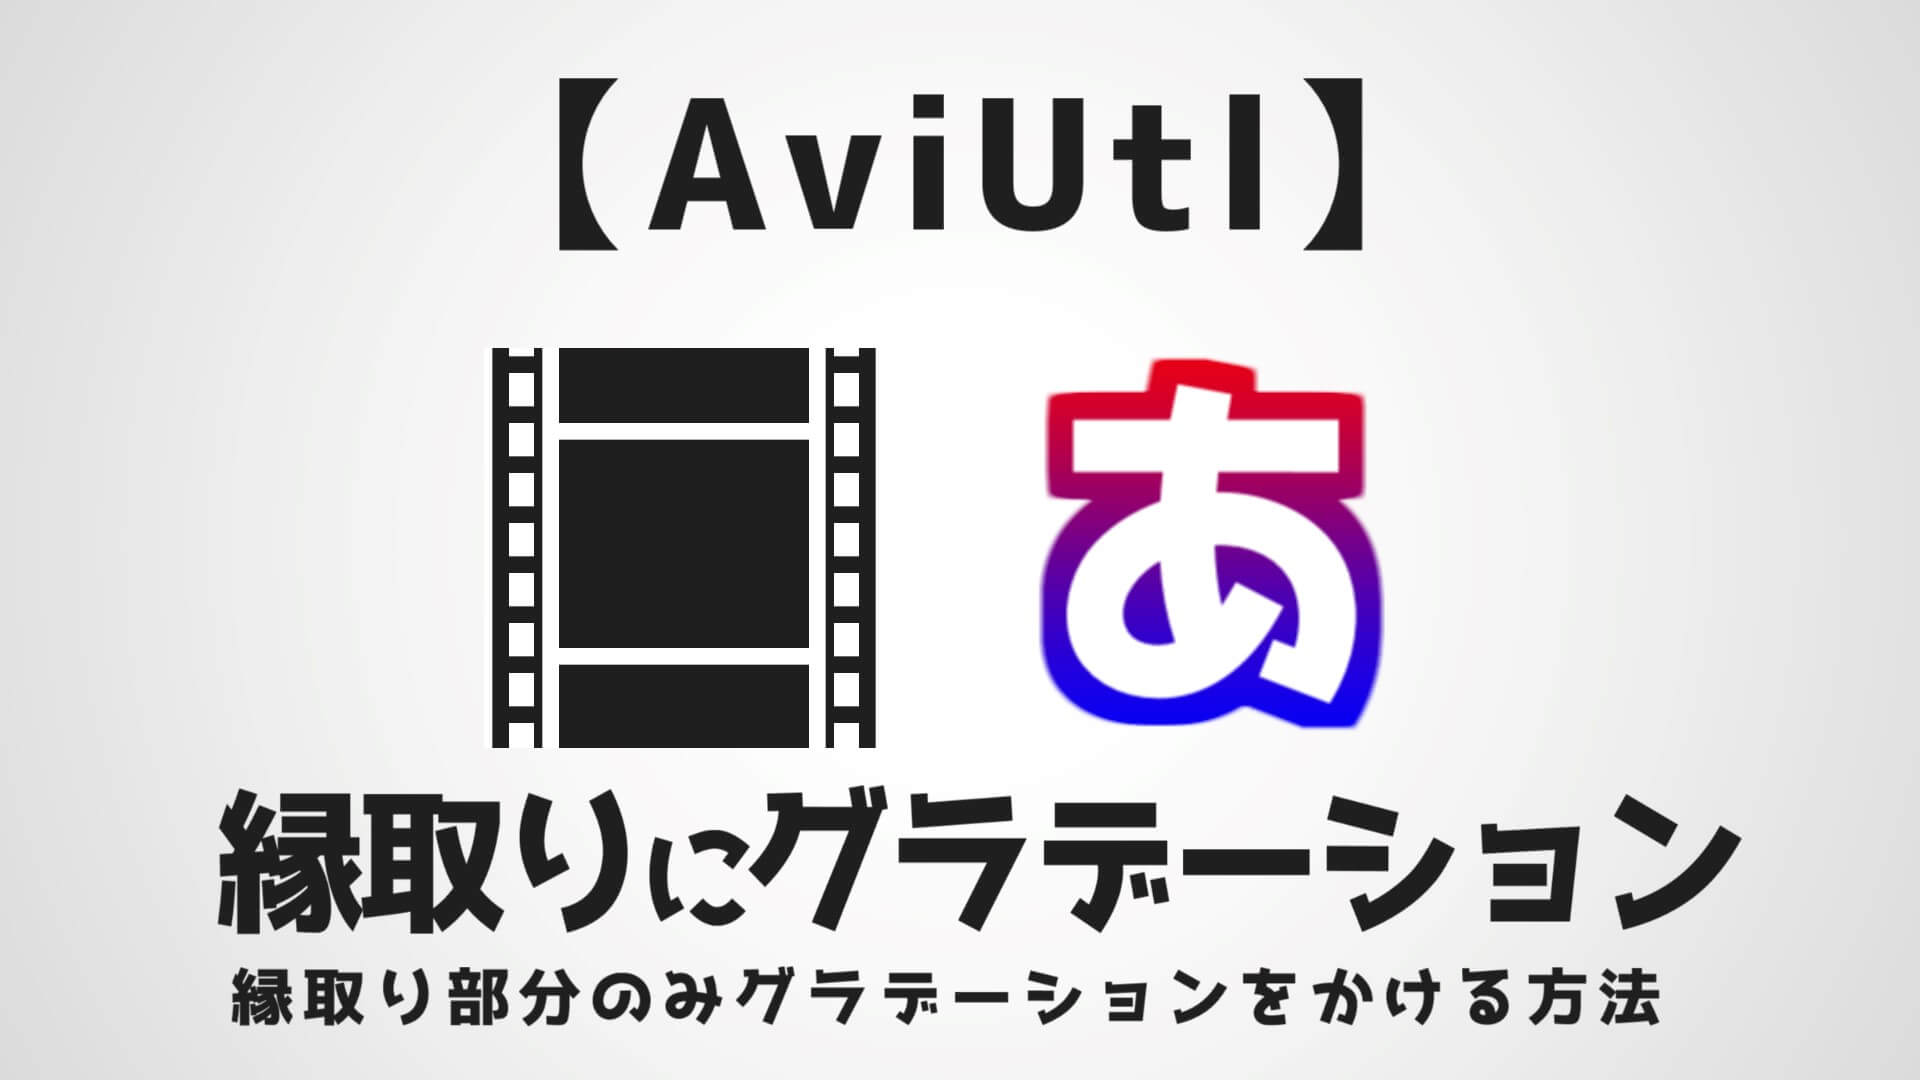 Aviutl 縁取りにグラデーションをかける方法 スクリプト不要 Aketama Official Blog